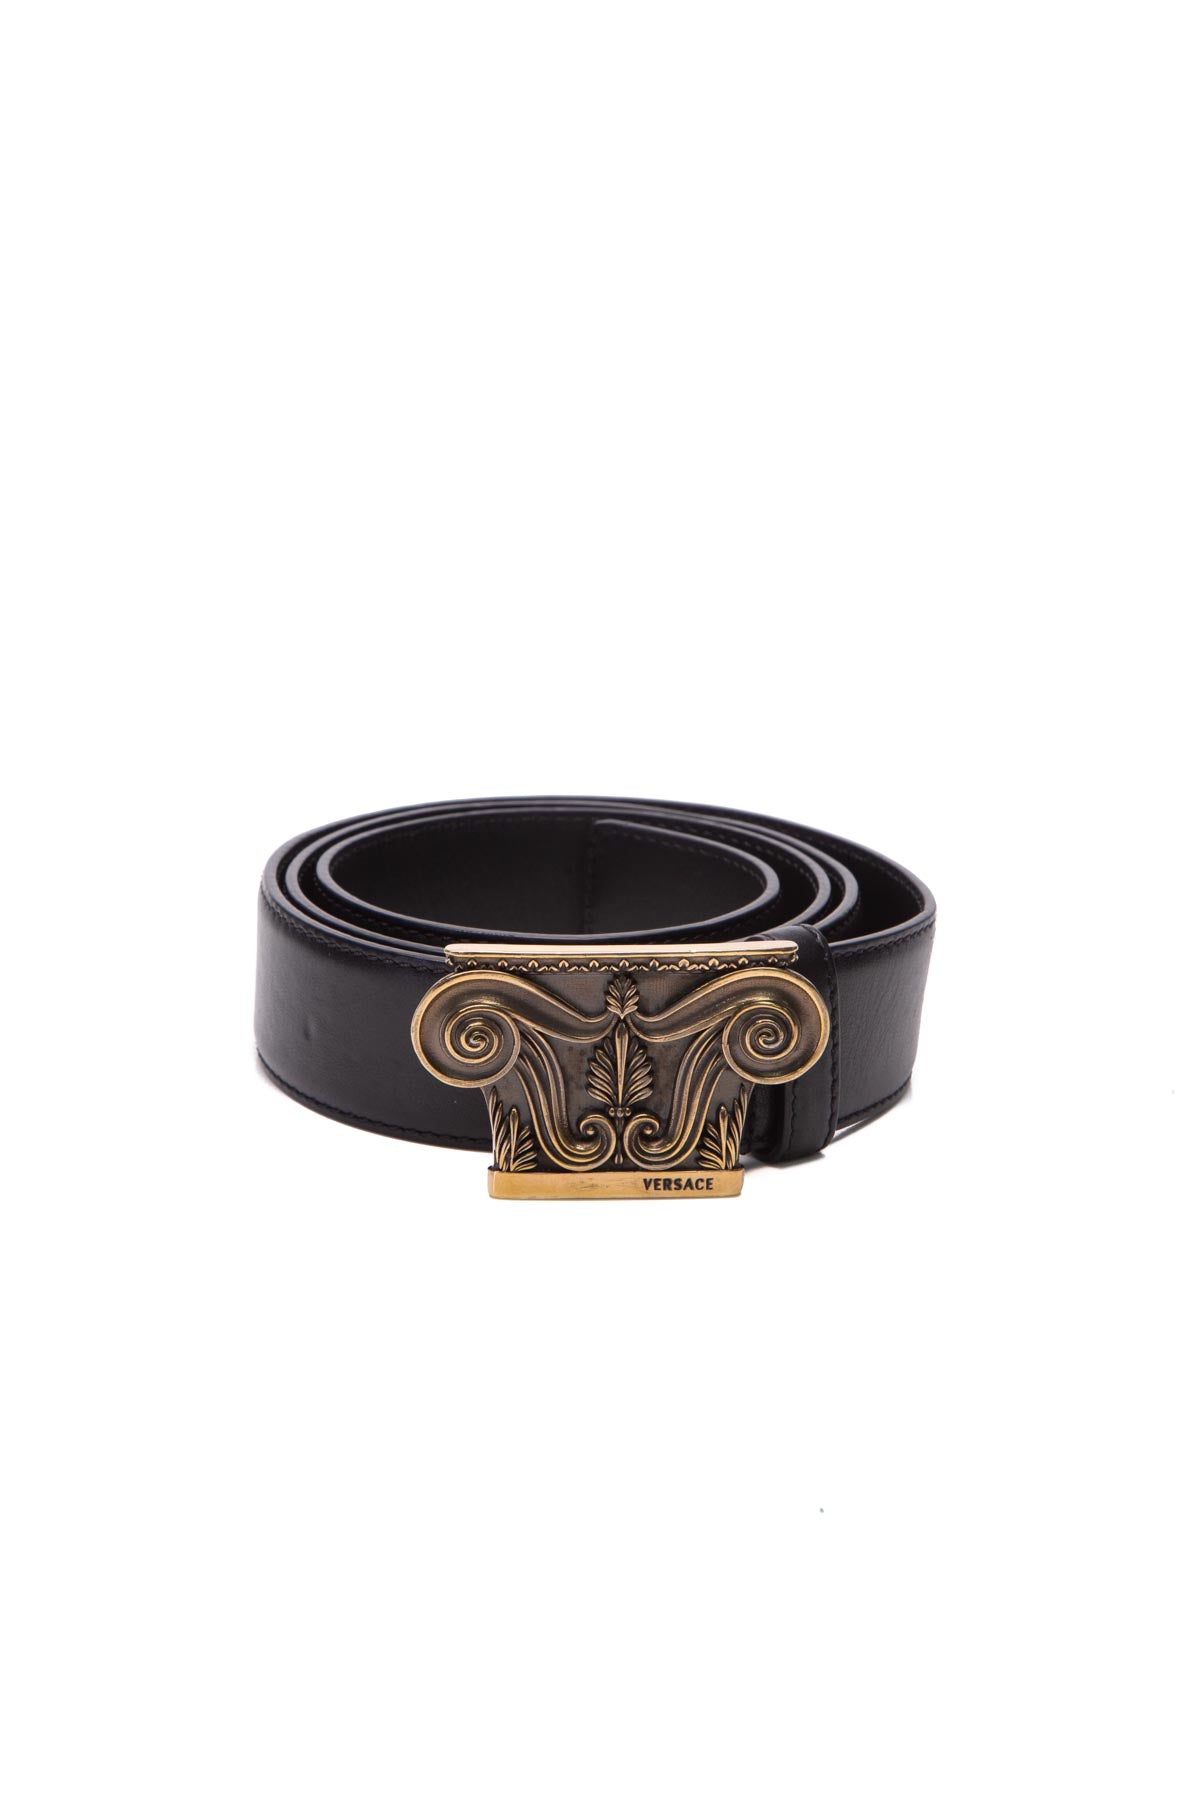 Versace Medusa Rectangular Buckle Belt in Black for Men